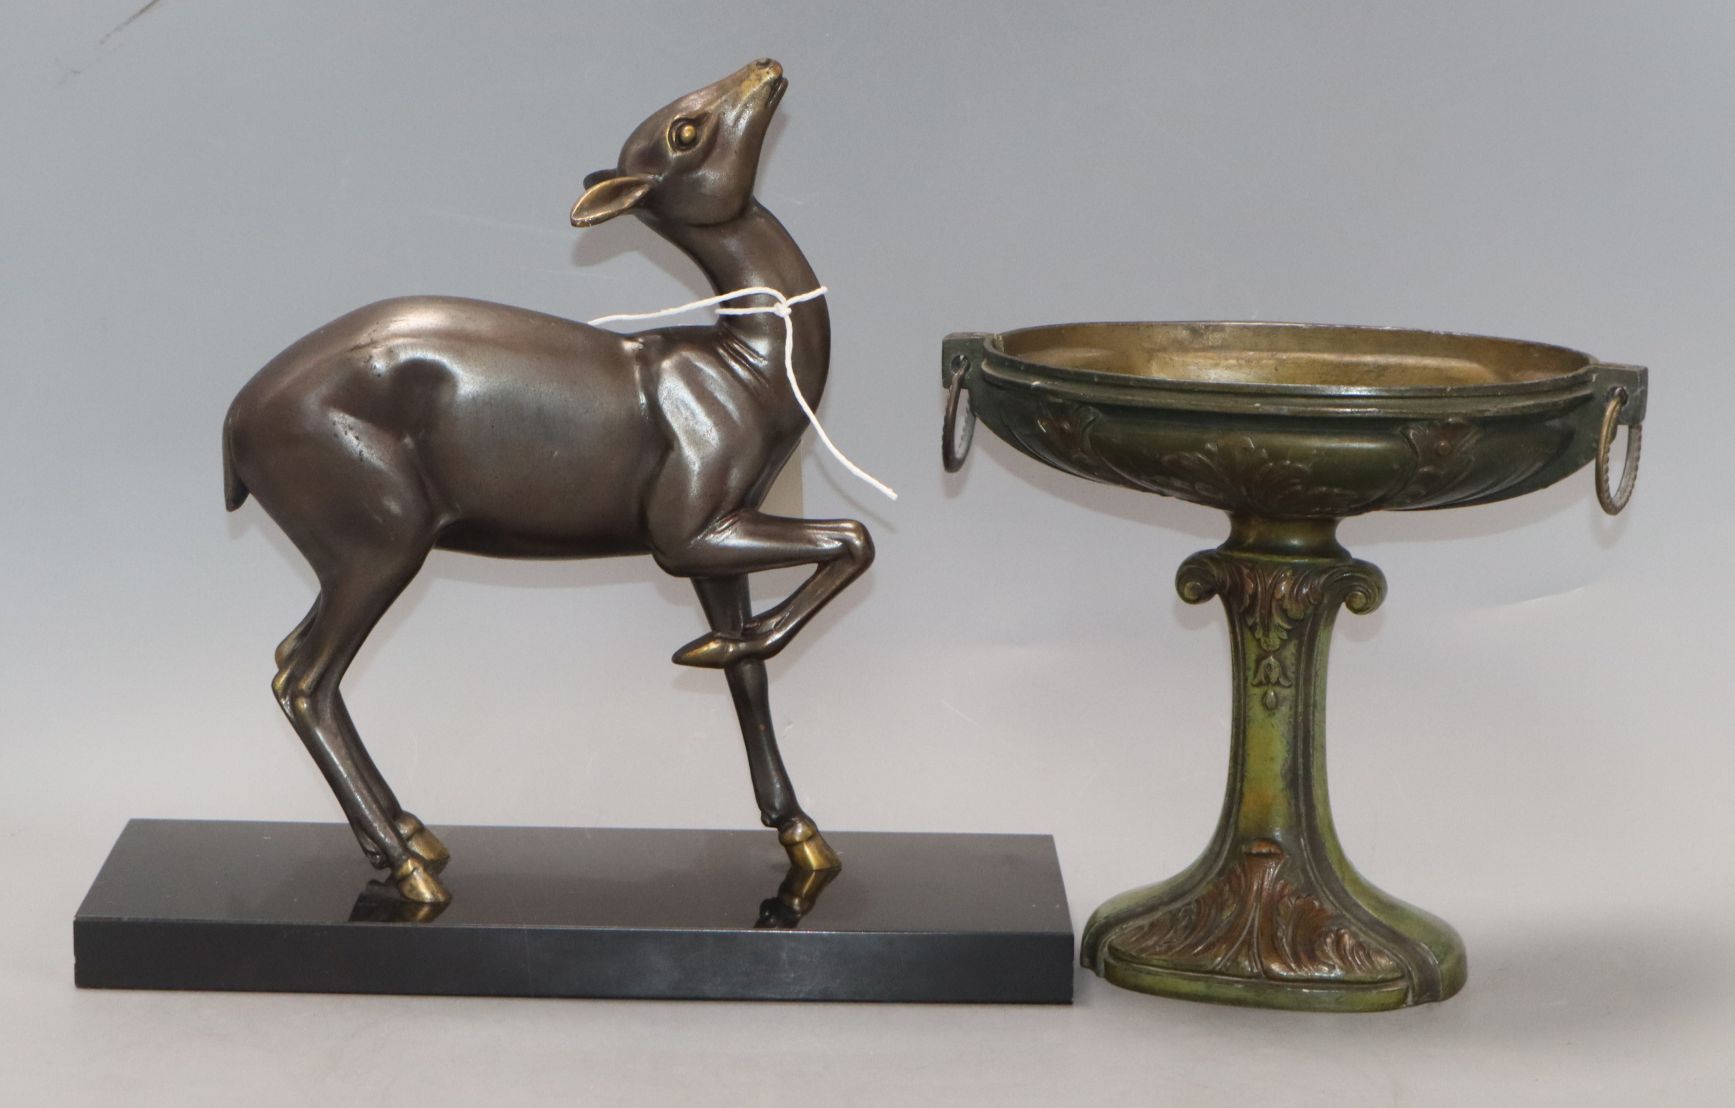 An Art Deco bronze figure of a deer and metal centrepiece tallest 26cm